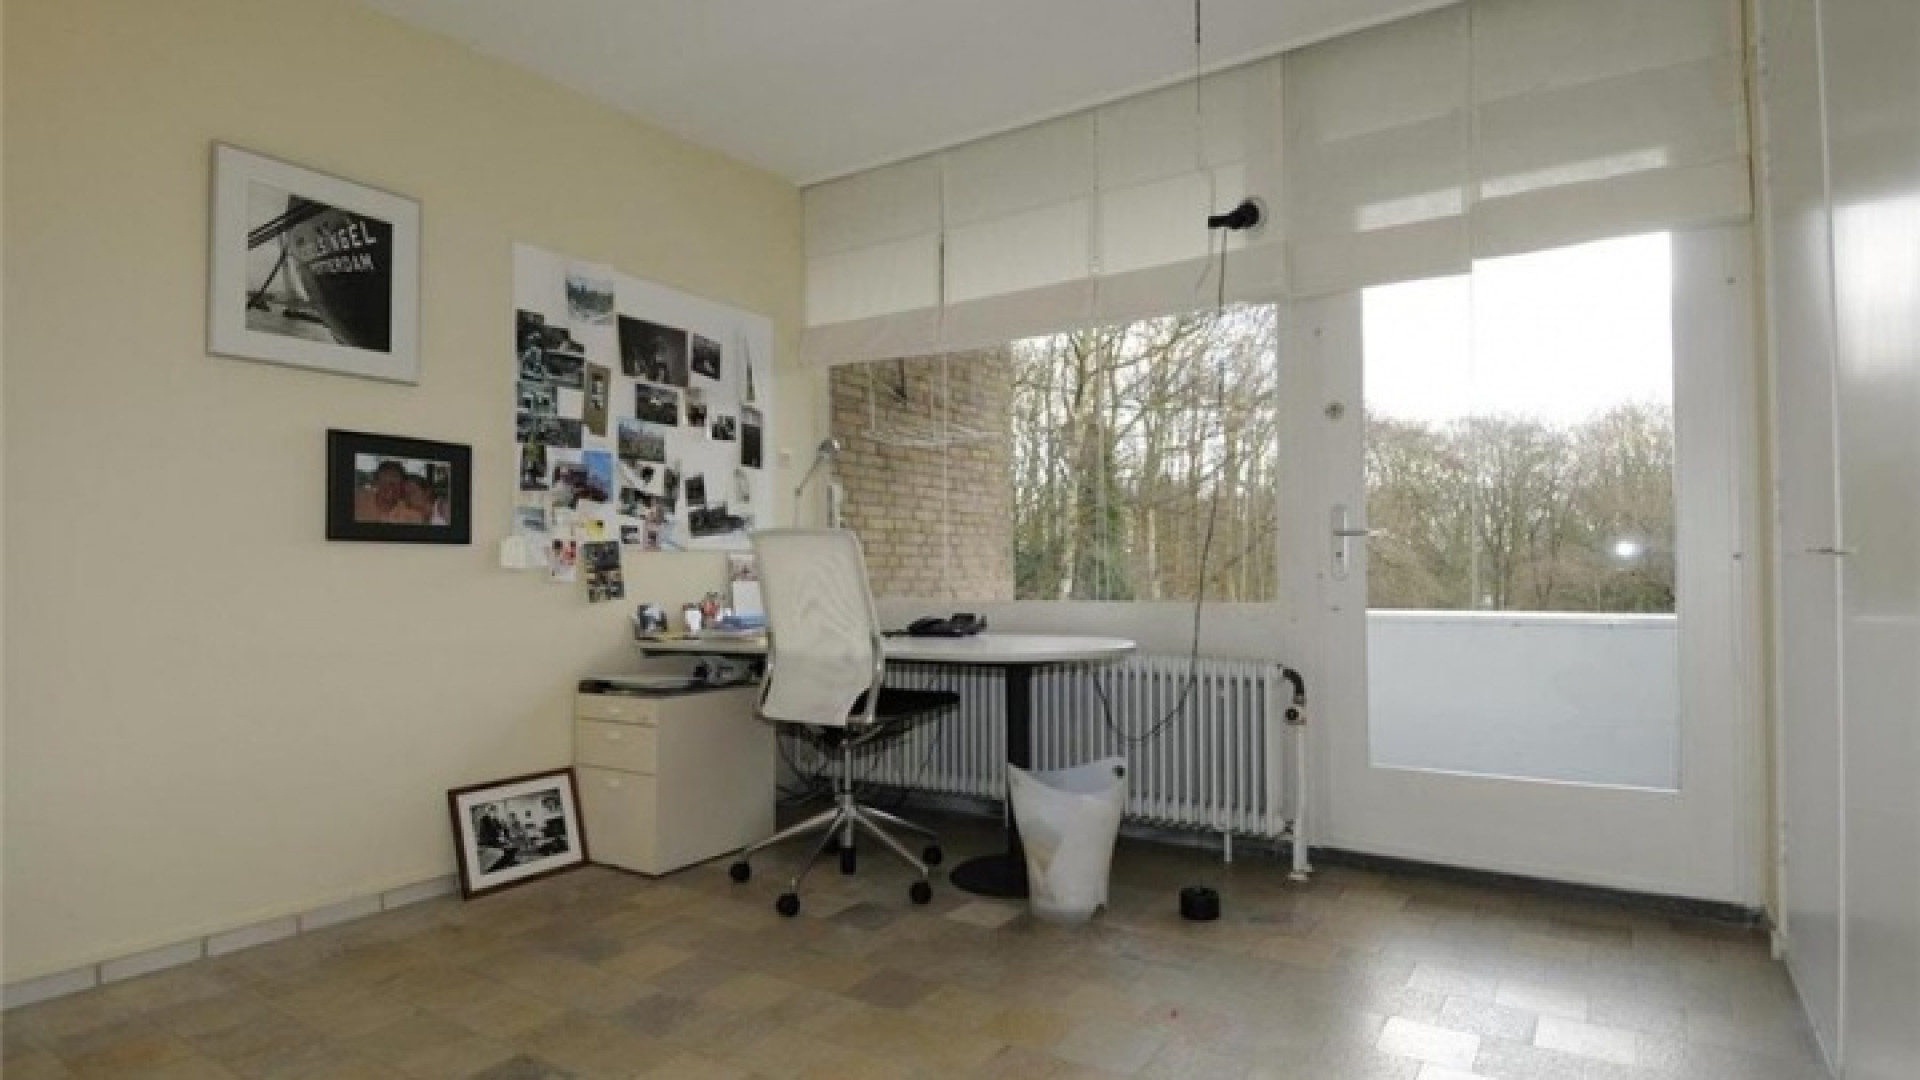 Totale prijsverlaging van half miljoen euro moet koper lokken voor villa Neelie Smit Kroes. Zie foto's!